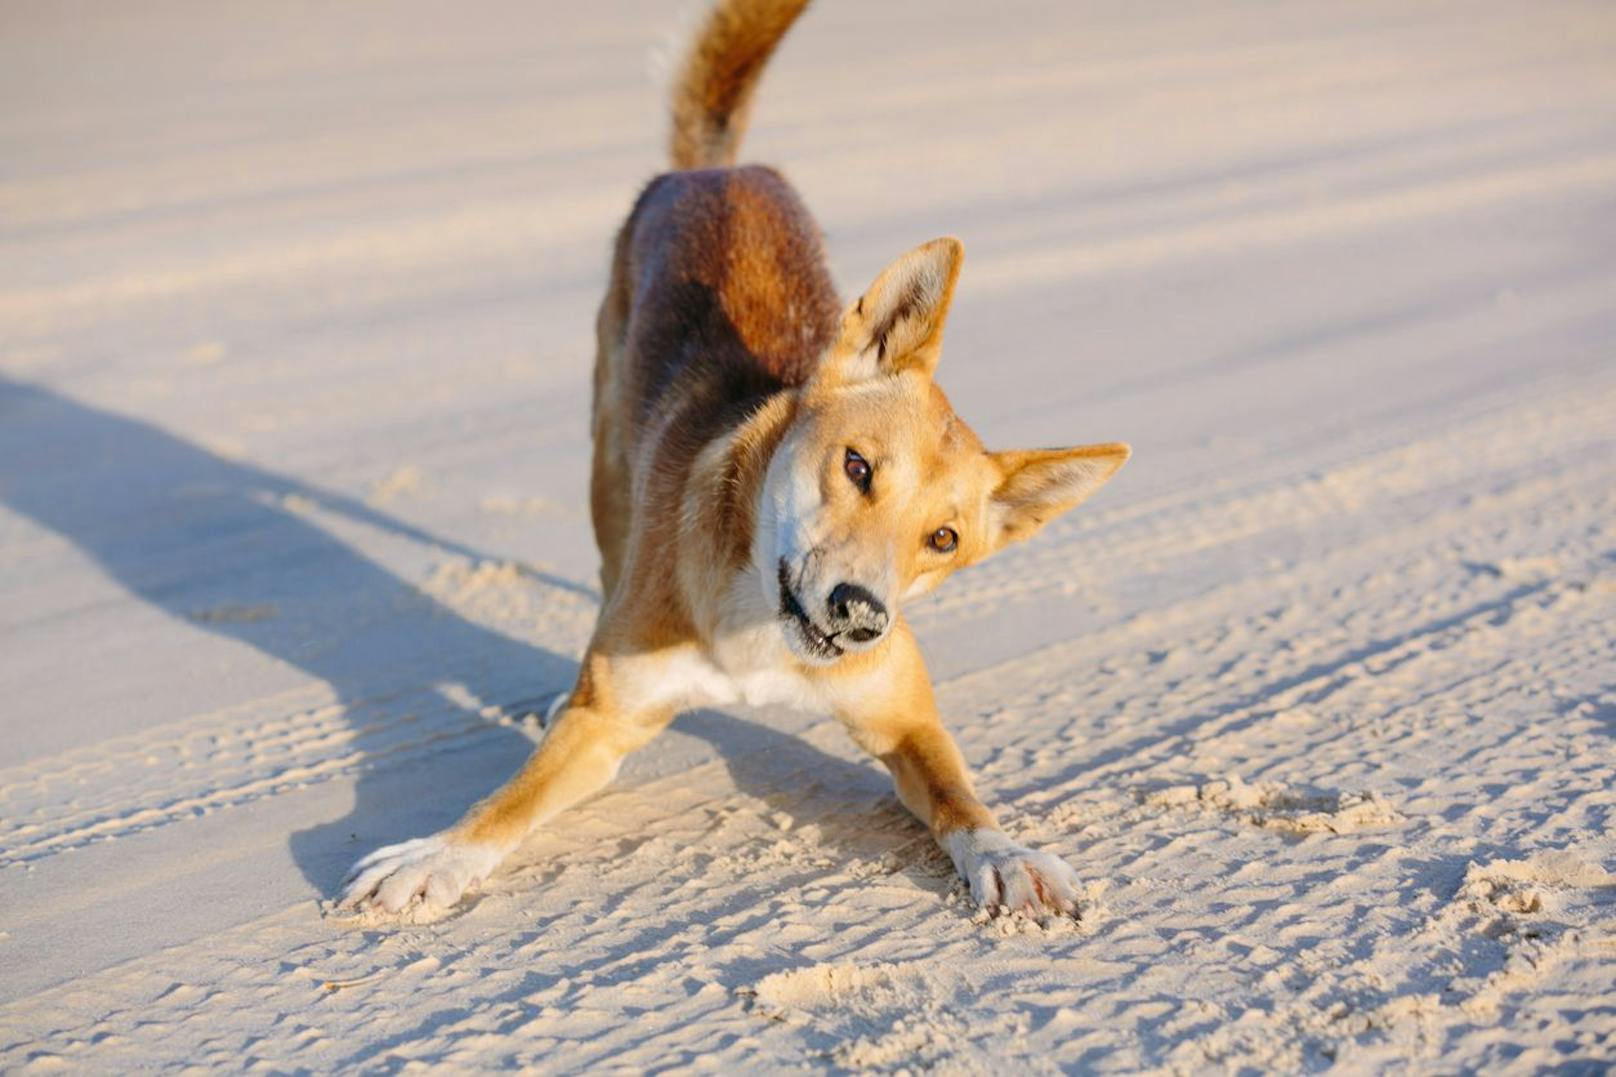 In heißen Regionen beobachtet man, dass Dingos eher nachtaktiv sind - in kühlen Regionen jagen sie auch tagsüber.